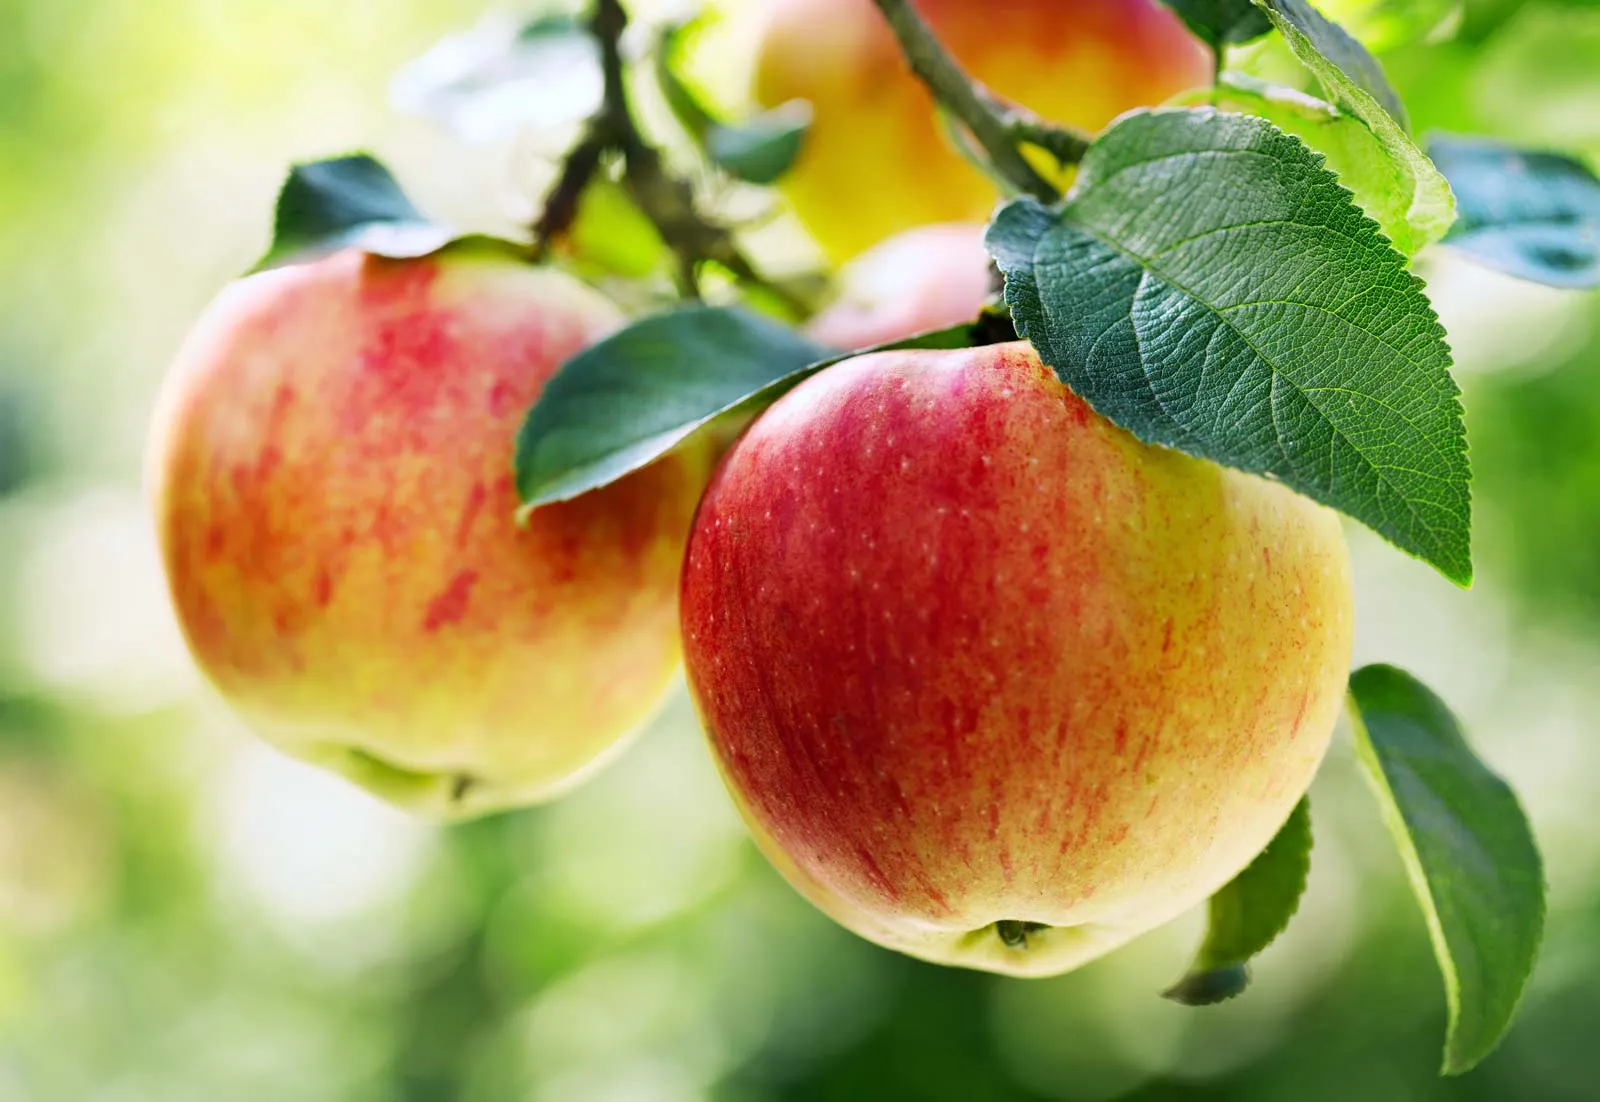 Wprowadzenie do uprawy i nawadniania upraw jabłek